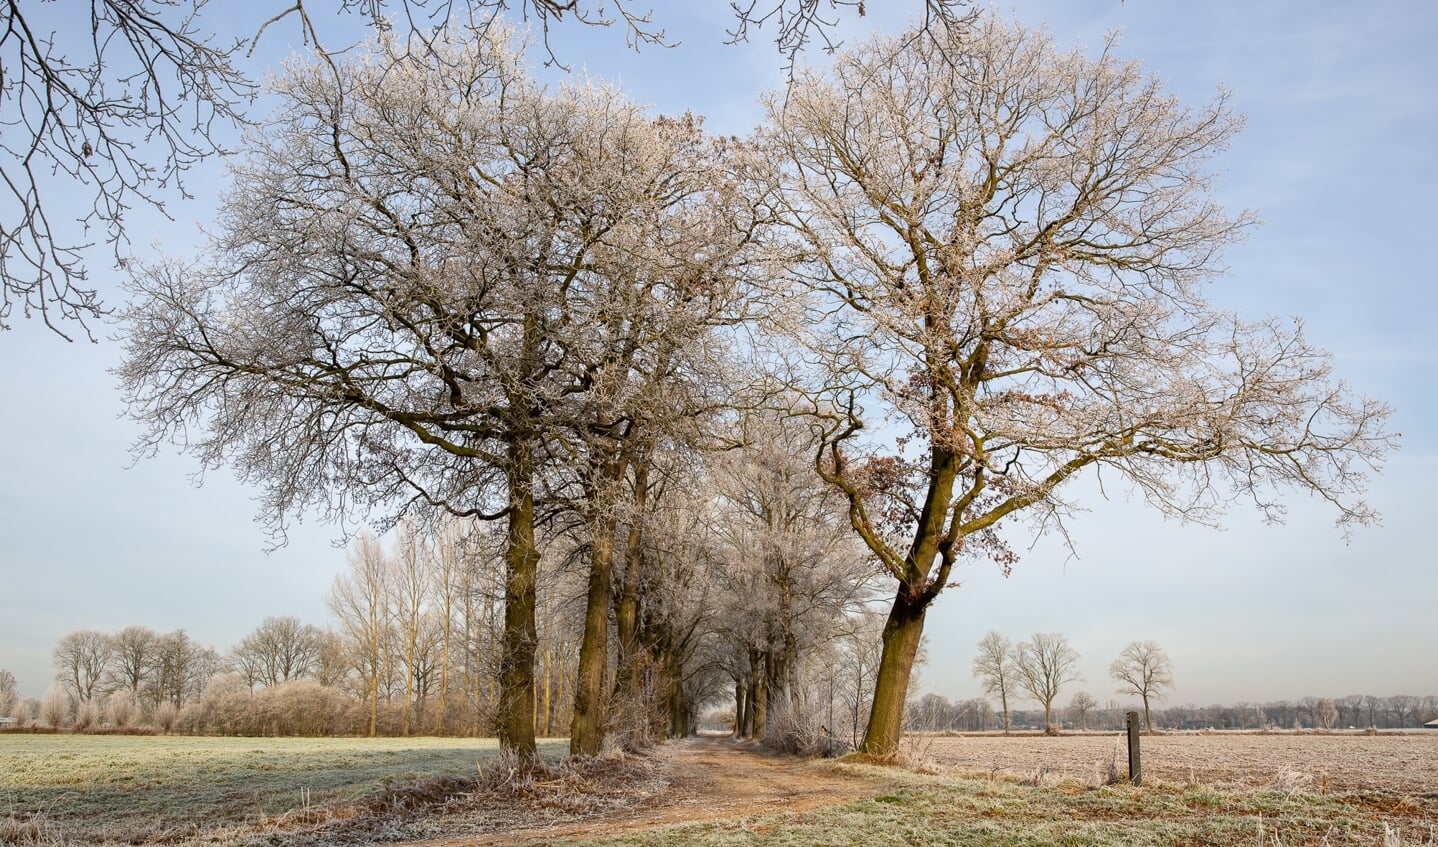 Vereniging Bomenbelang Bronckhorst zet zich al 25 jaar in voor het behoud van (monumentale) bomen. Foto: Hans van Kooten